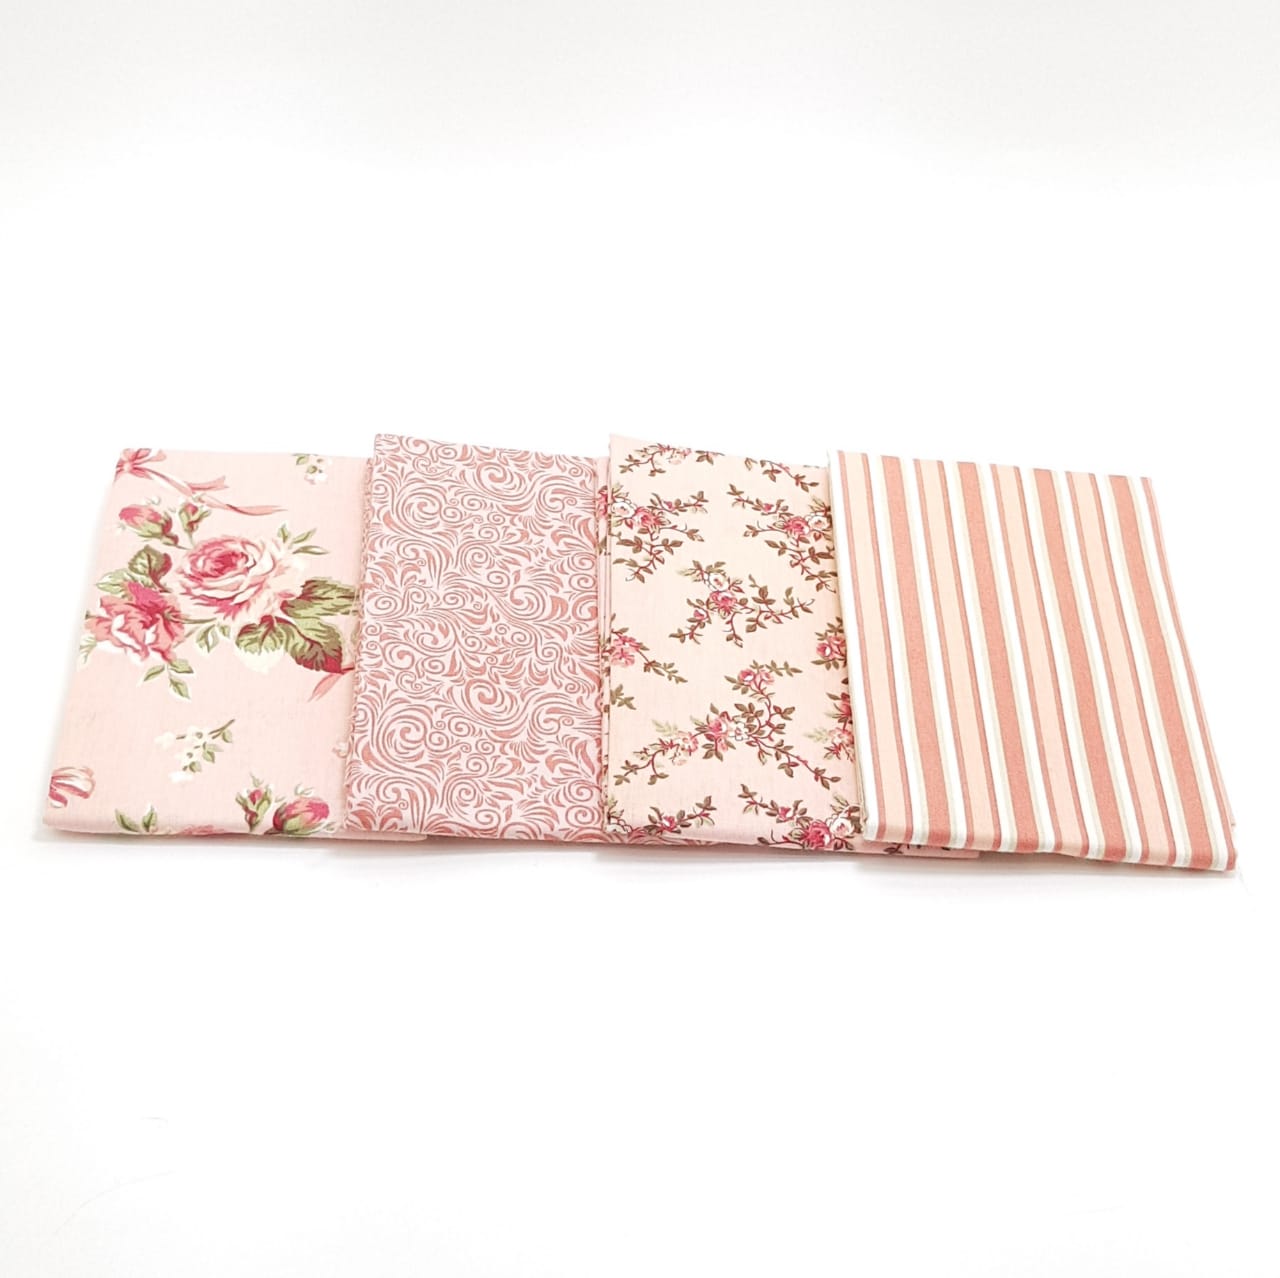 kit floral caldeira rosa/ 4 estampas - 0,50cm x 0,75cm